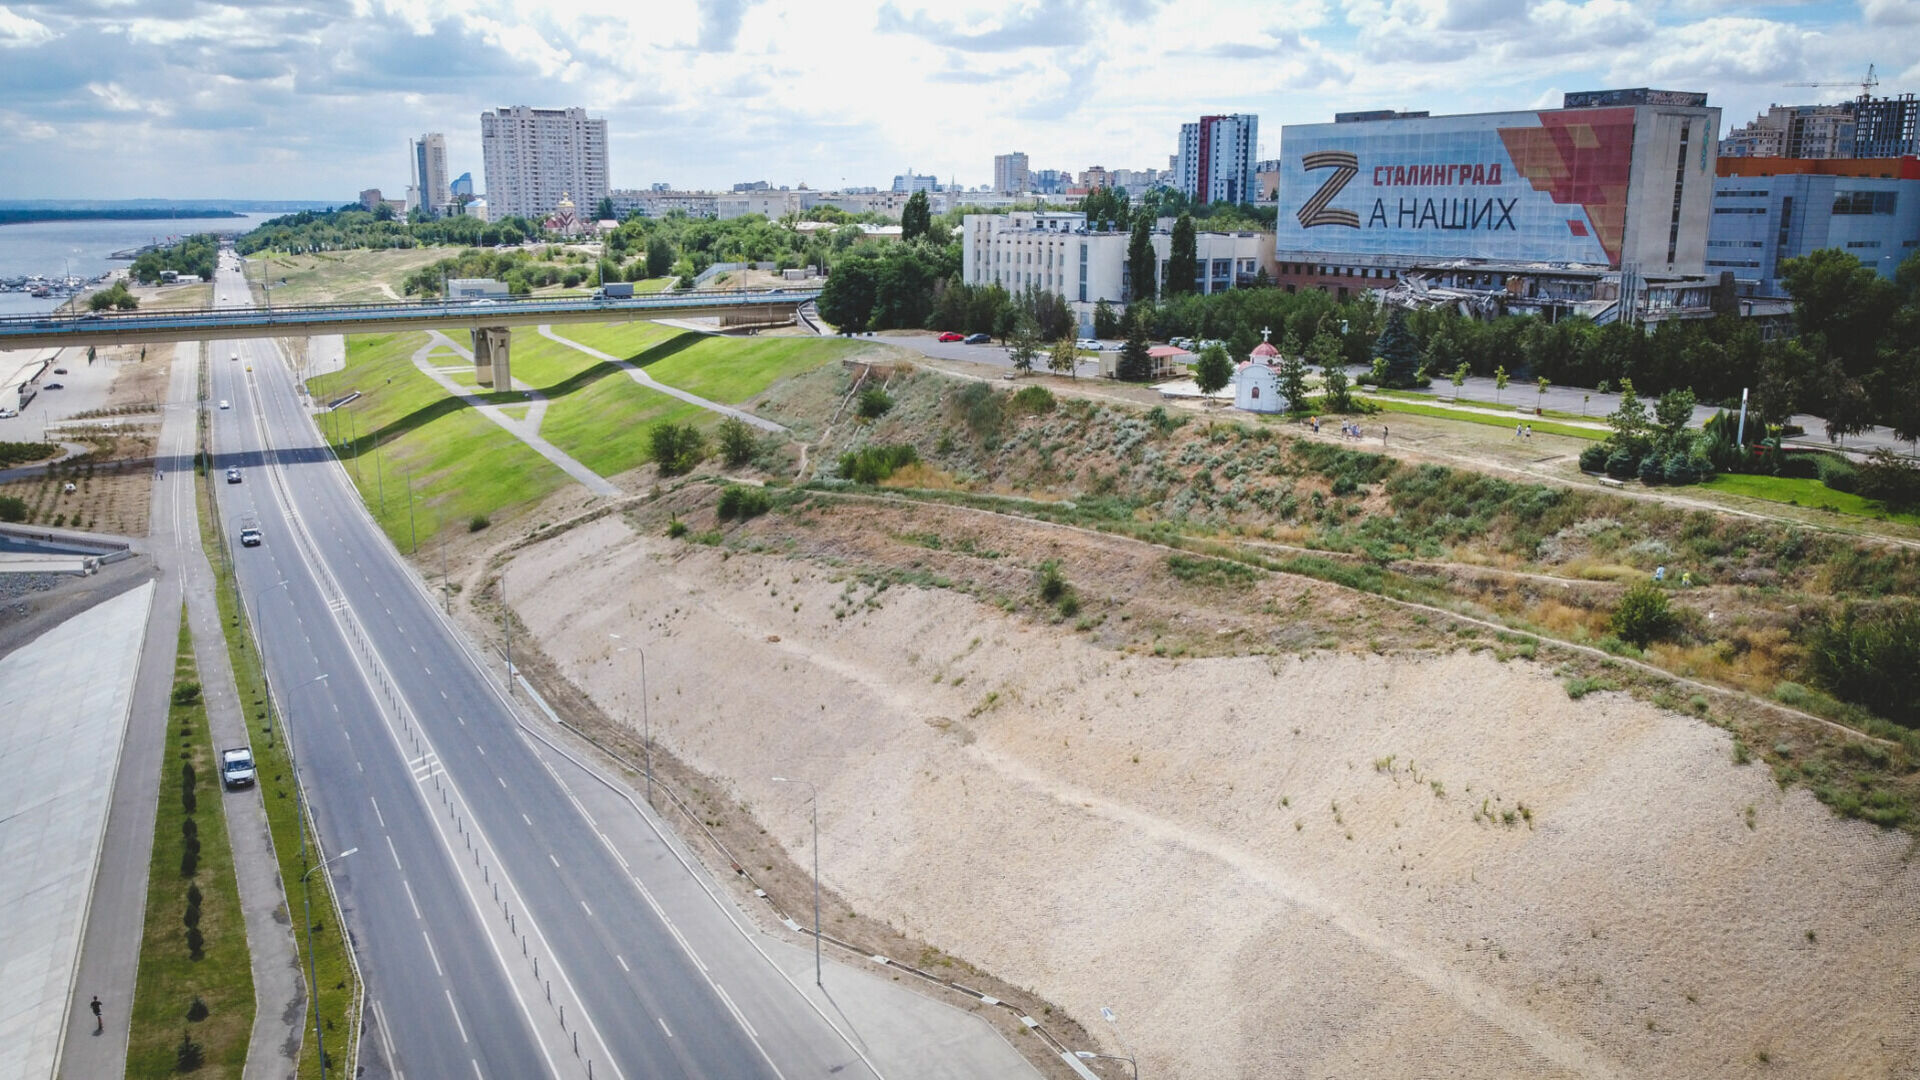 Движение транспорта ограничили в центре Волгограда